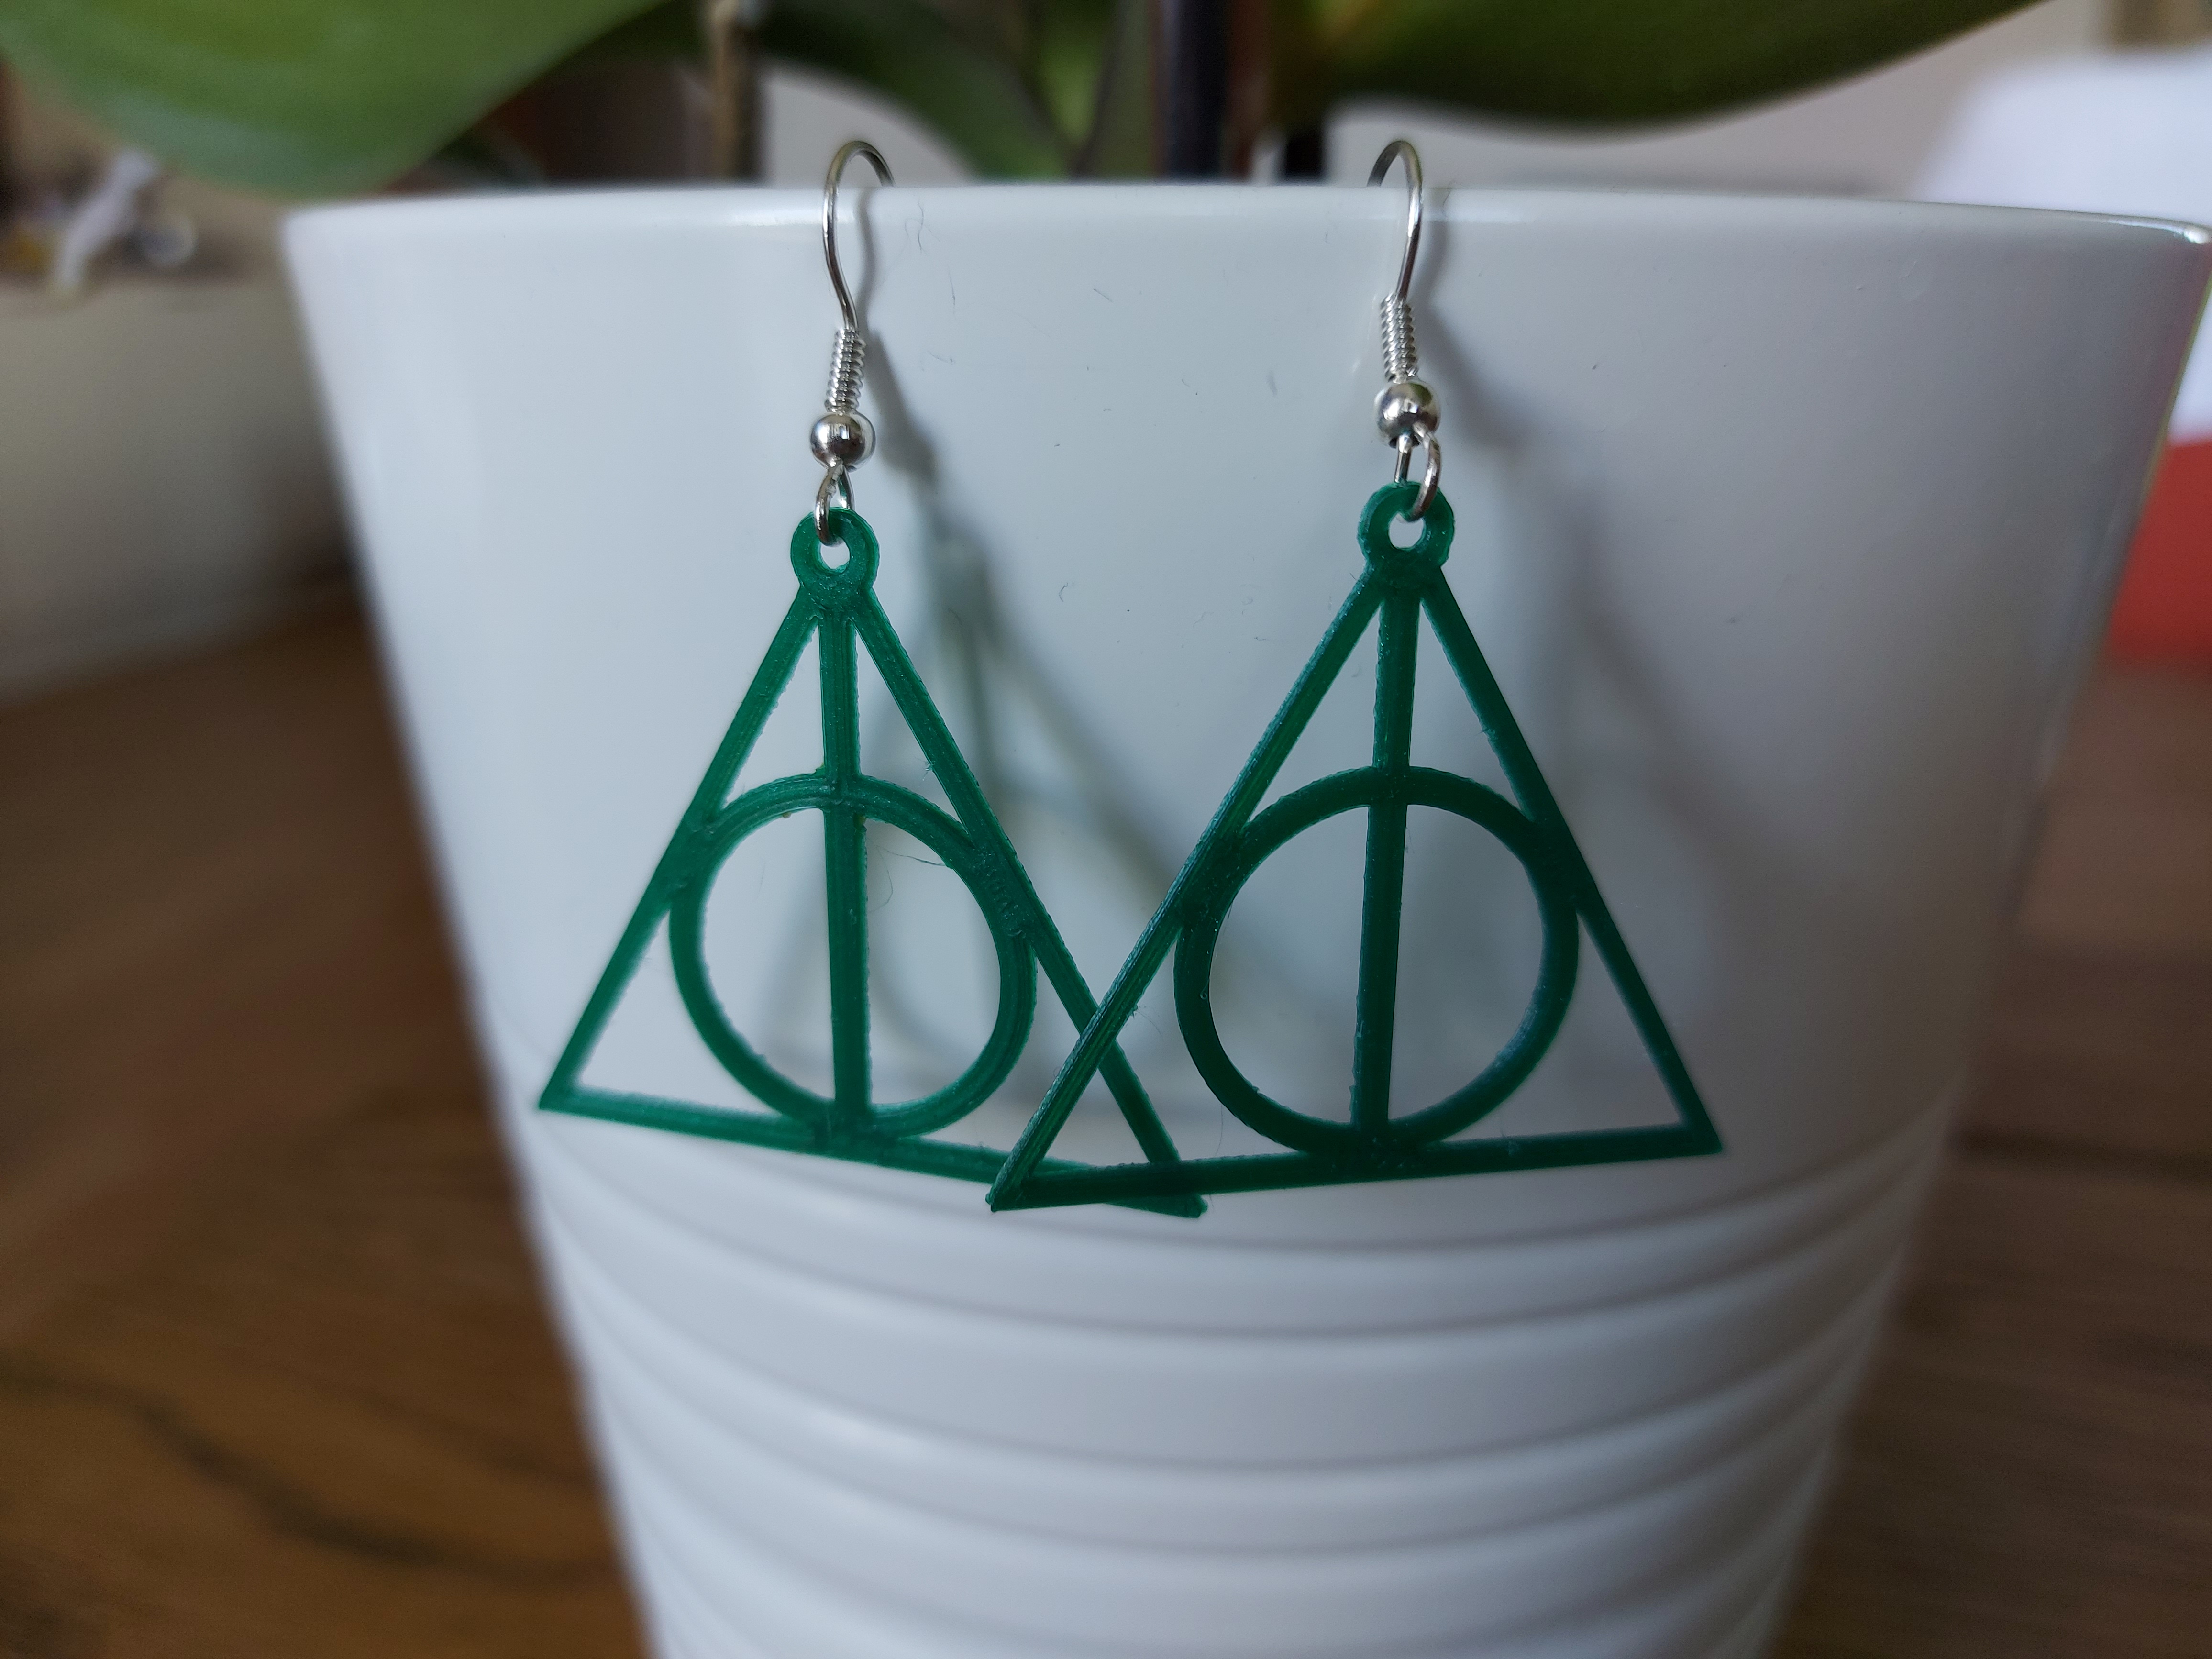 Harry Potter Earrings - Platform 9 3/4 Earrings - Hogwarts Express Earrings  | eBay